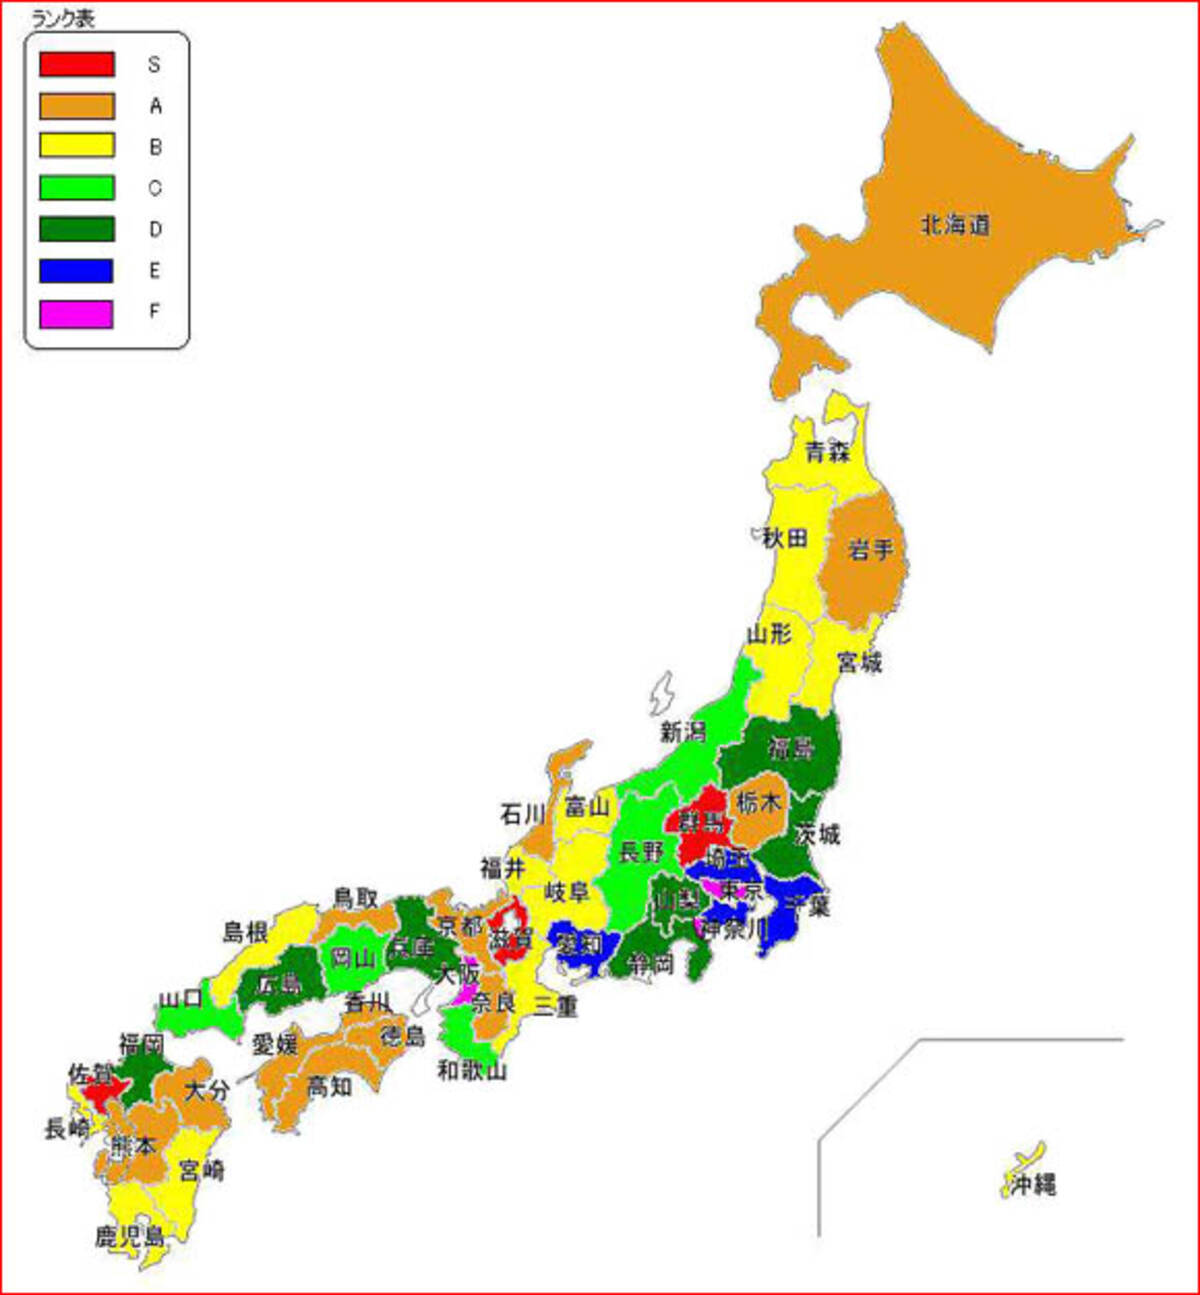 47都道府県の秘境度マップがスゴイ 群馬 滋賀 佐賀が超秘境と判明 10年8月日 エキサイトニュース